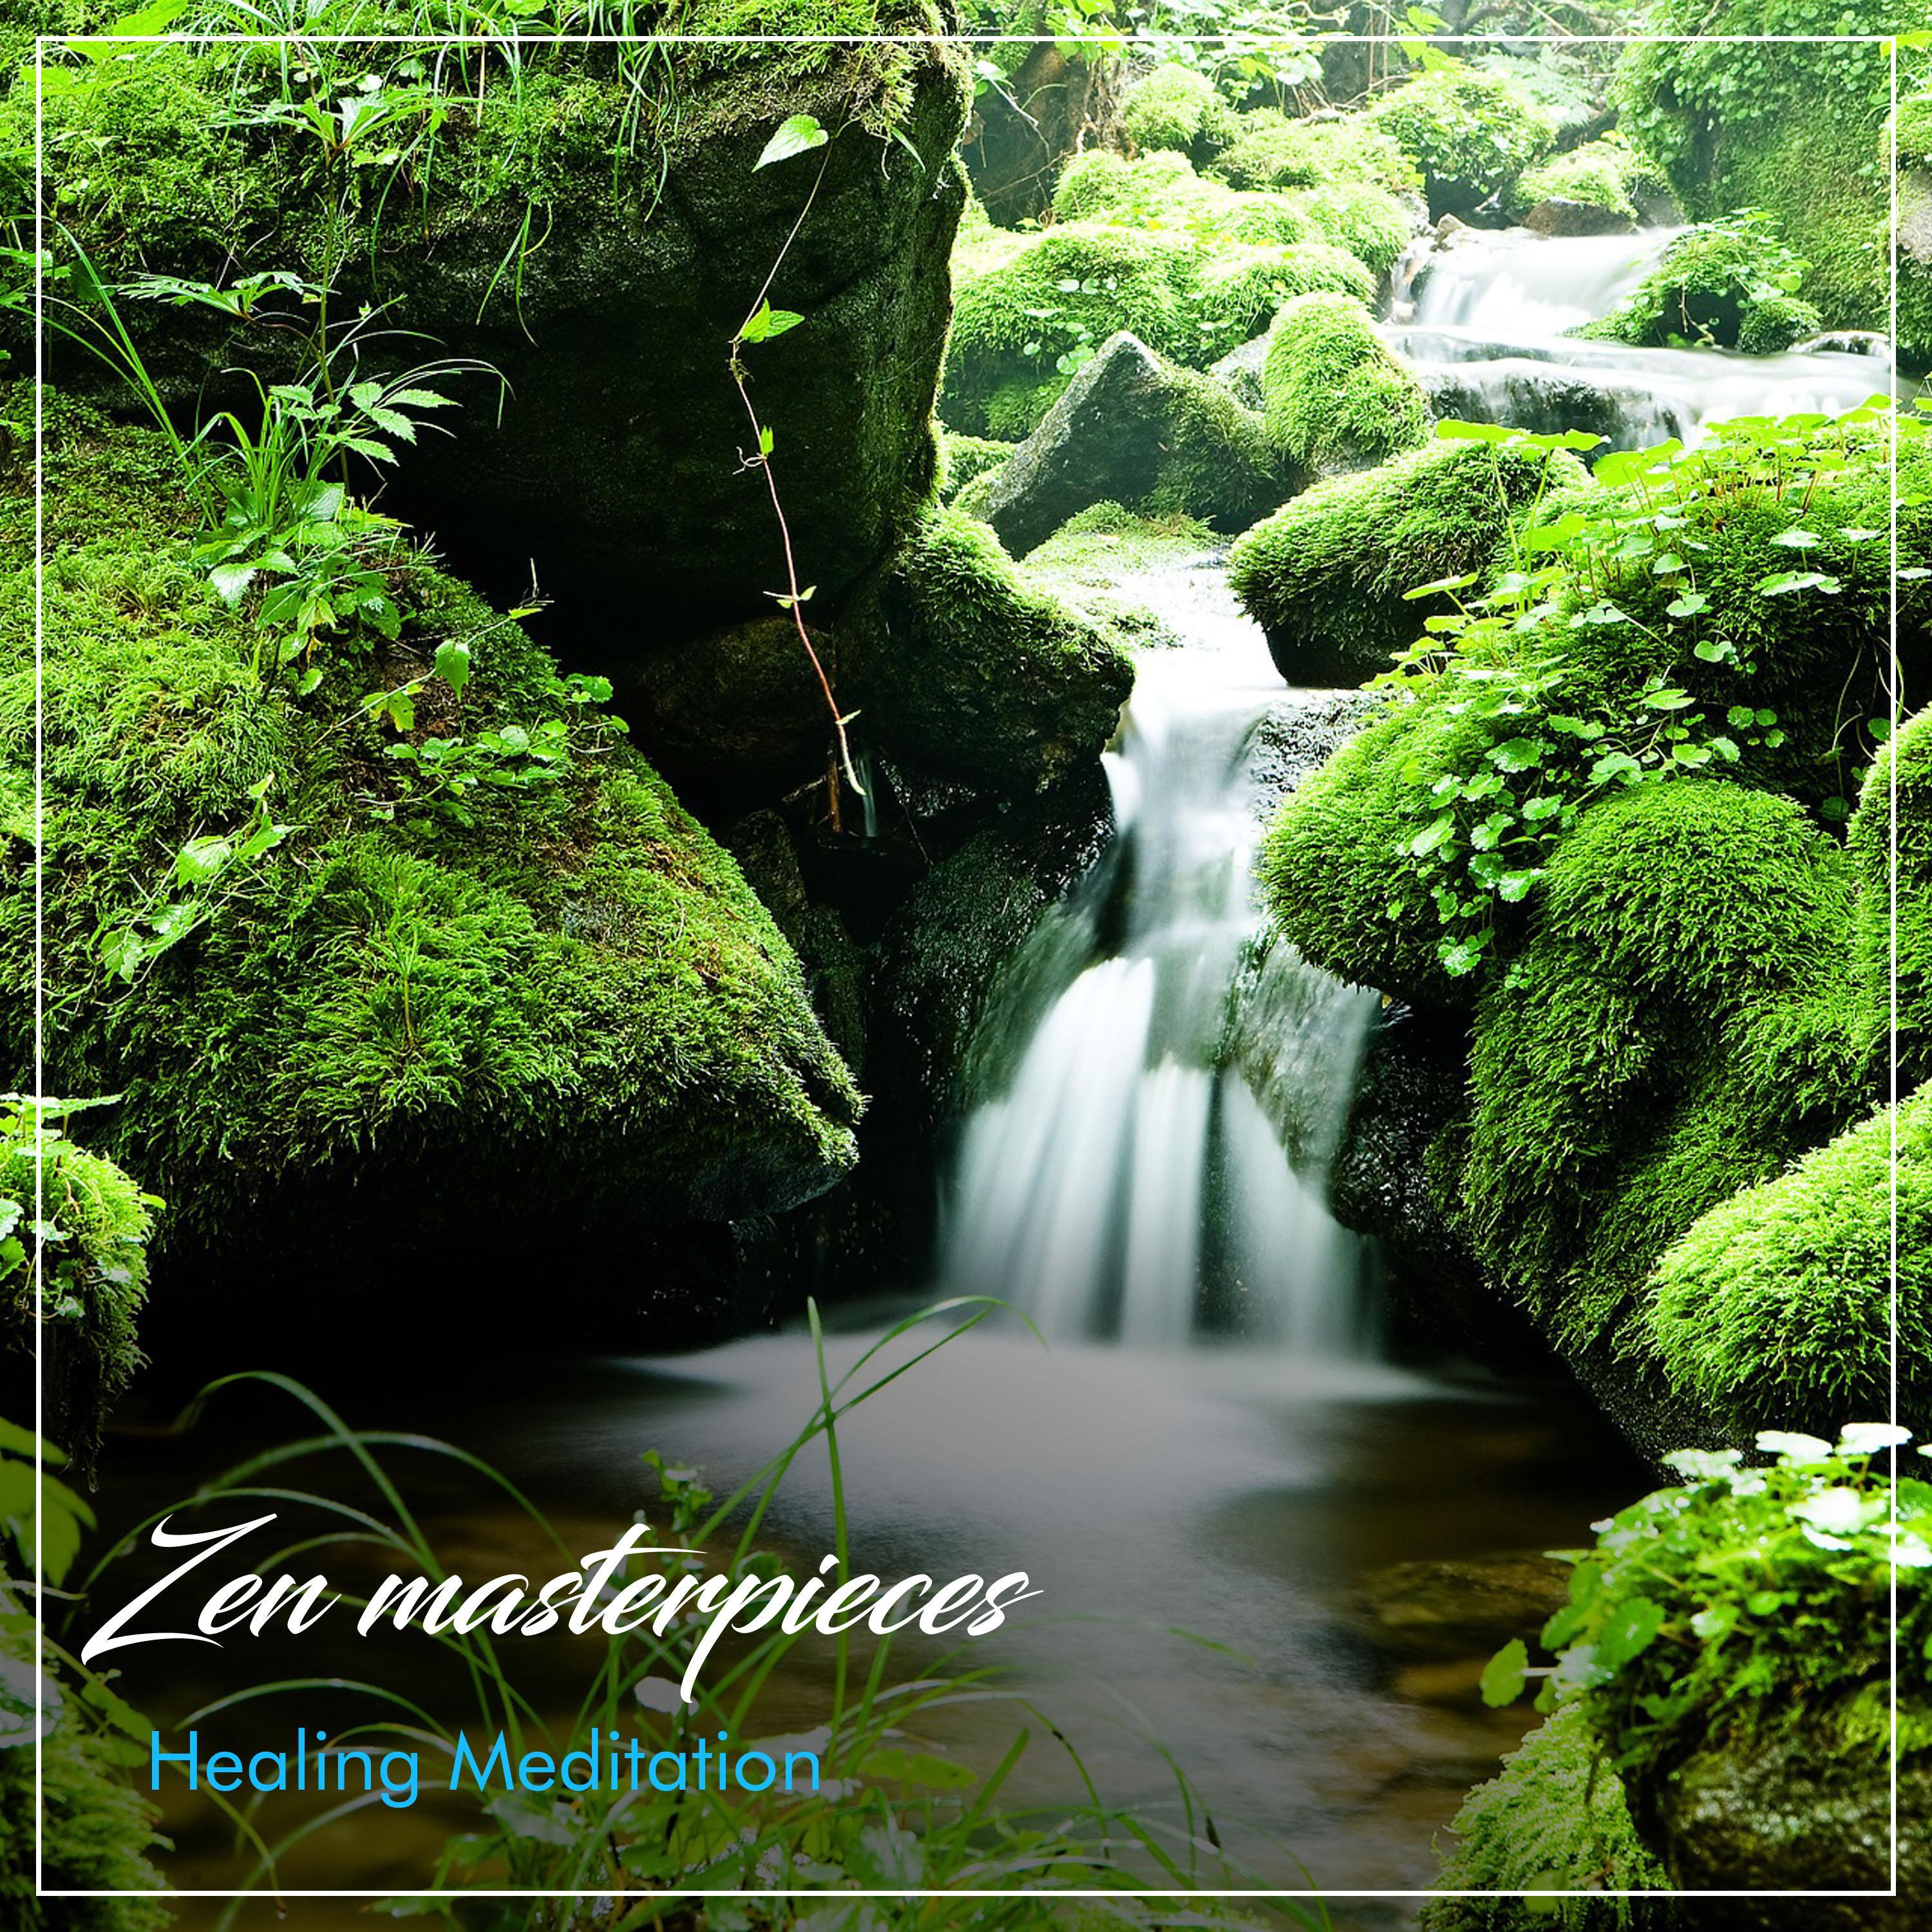 15 Zen Masterpieces - Healing Meditation